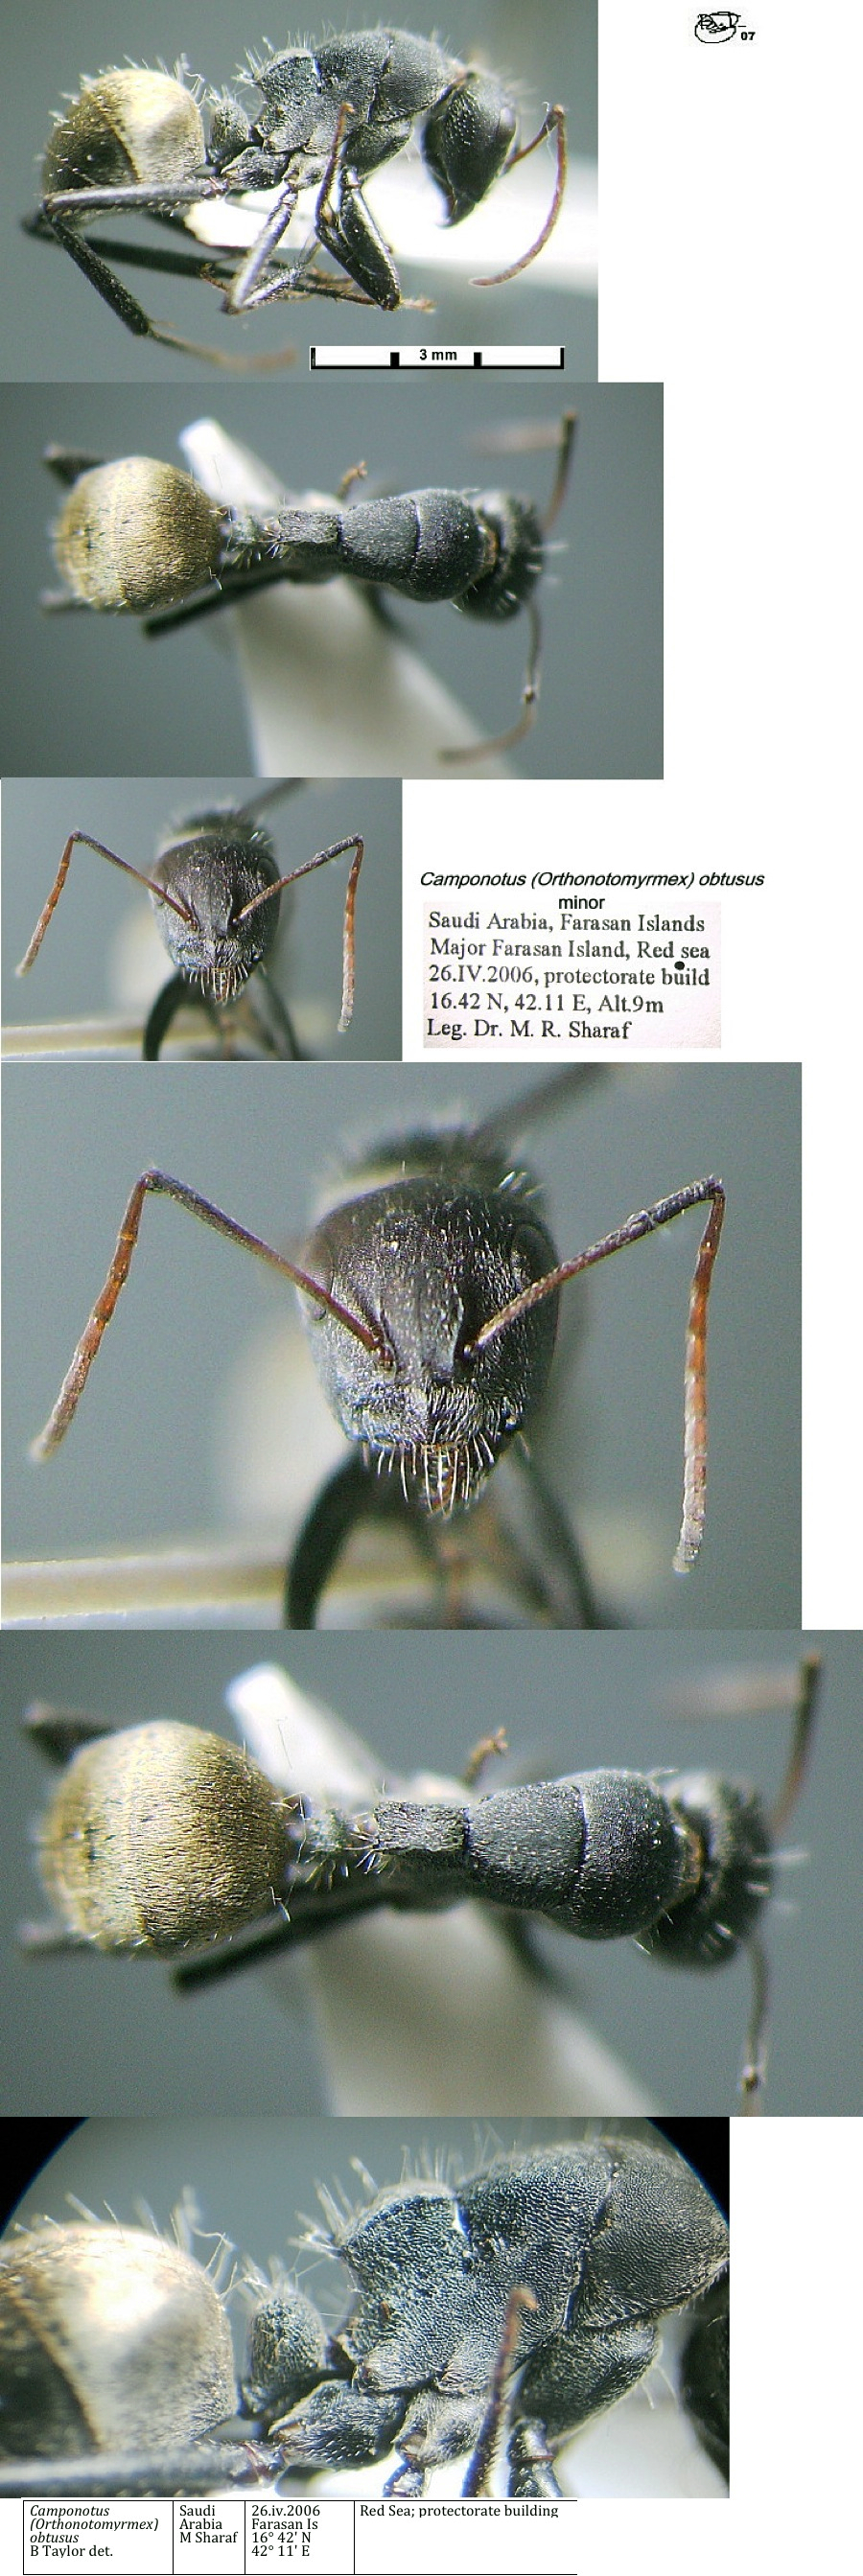 {Camponotus obtusus minor}